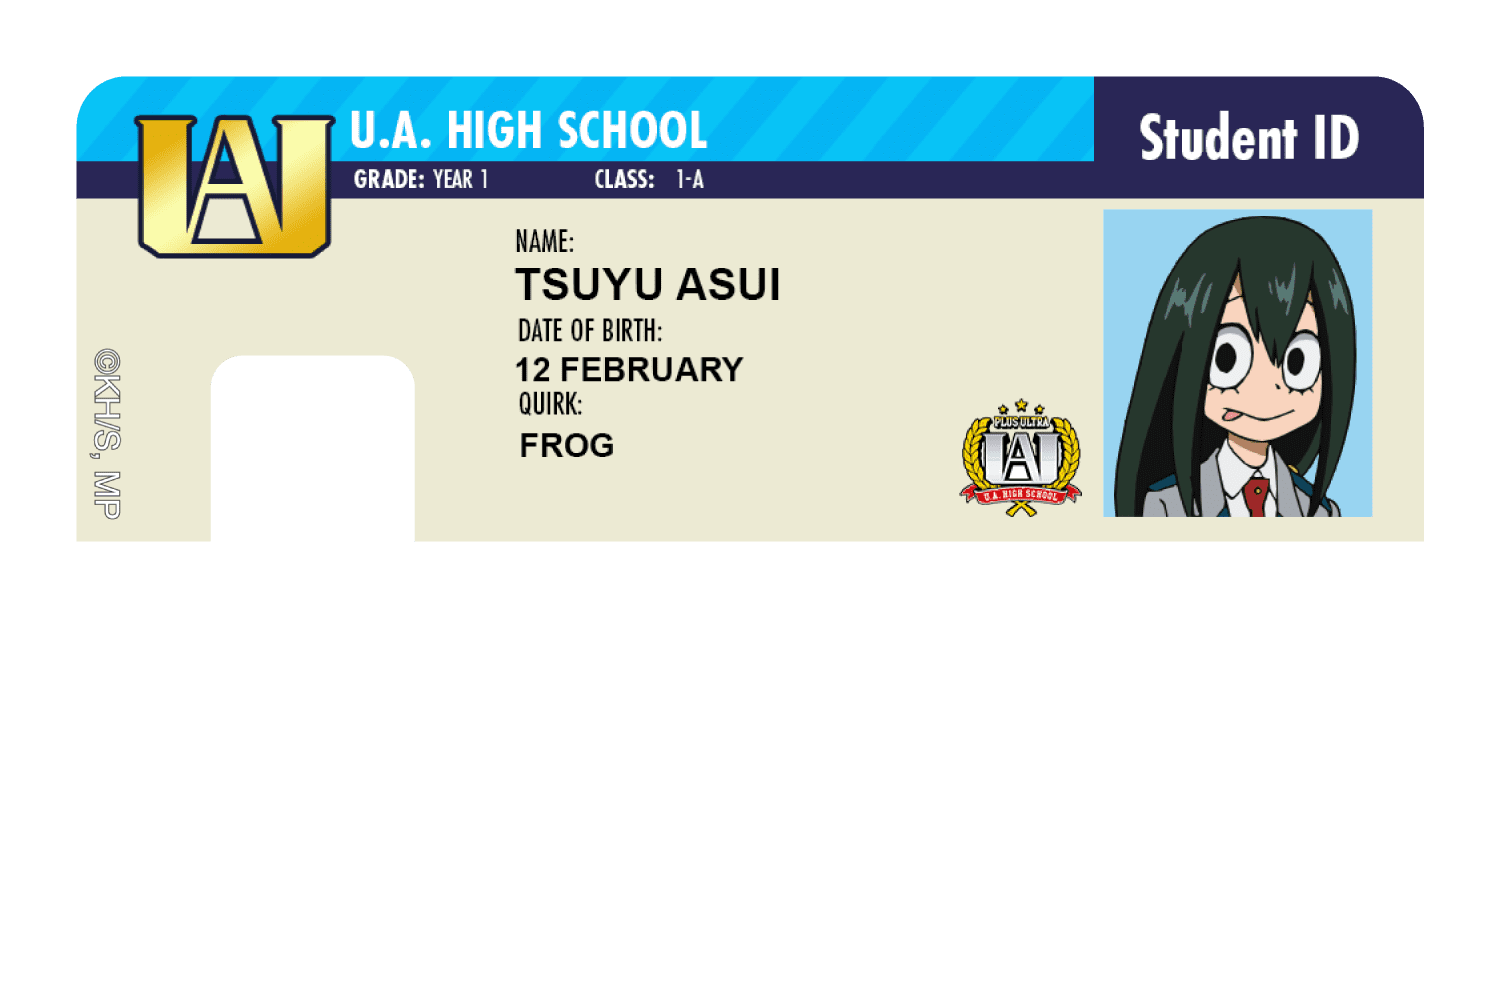 Student ID - Tsuyu Asui